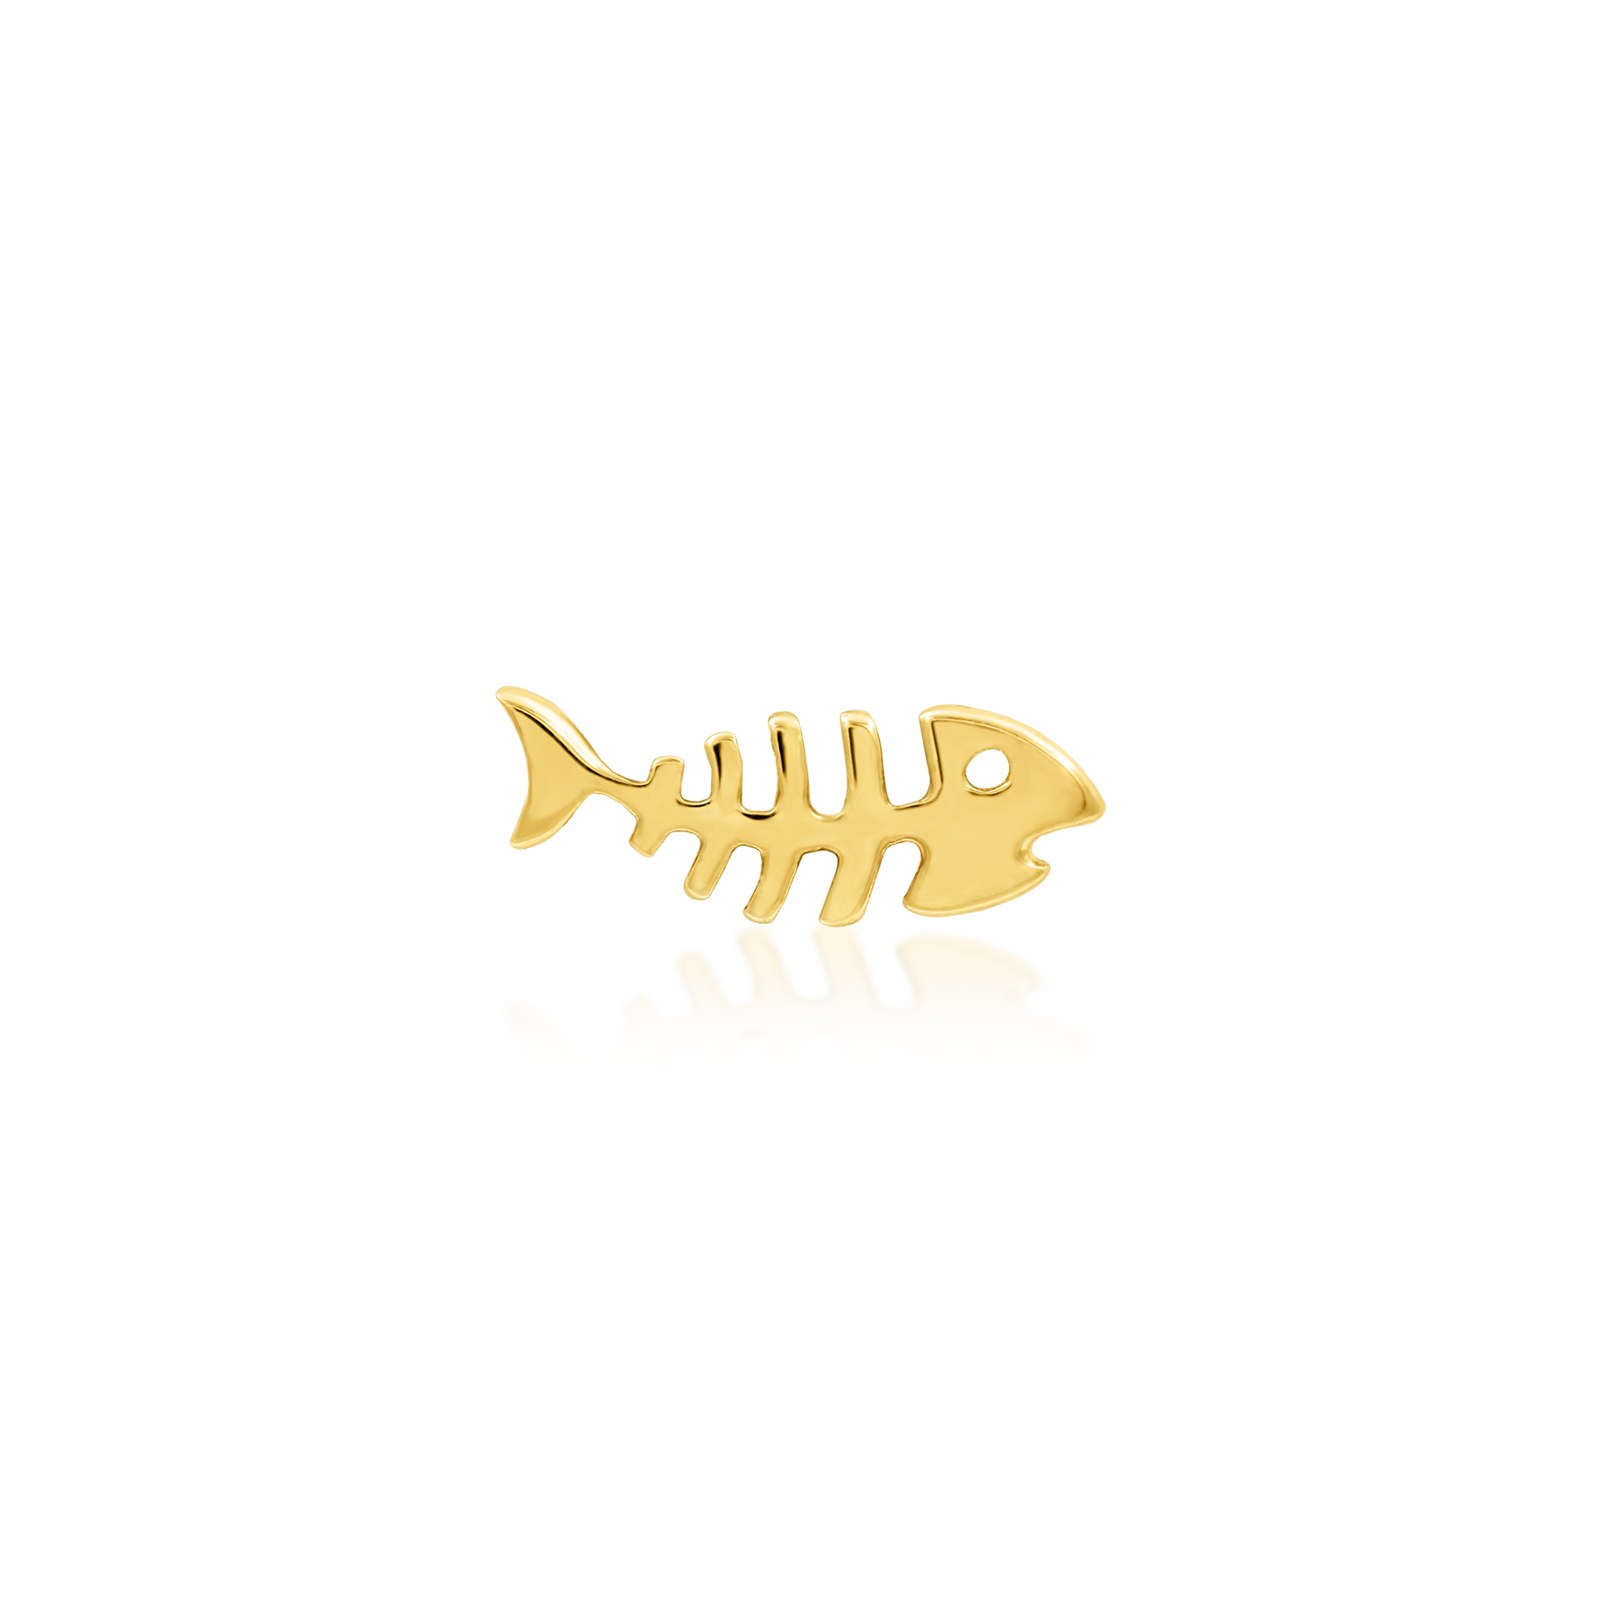 Fishbone in 14k Gold by Junipurr